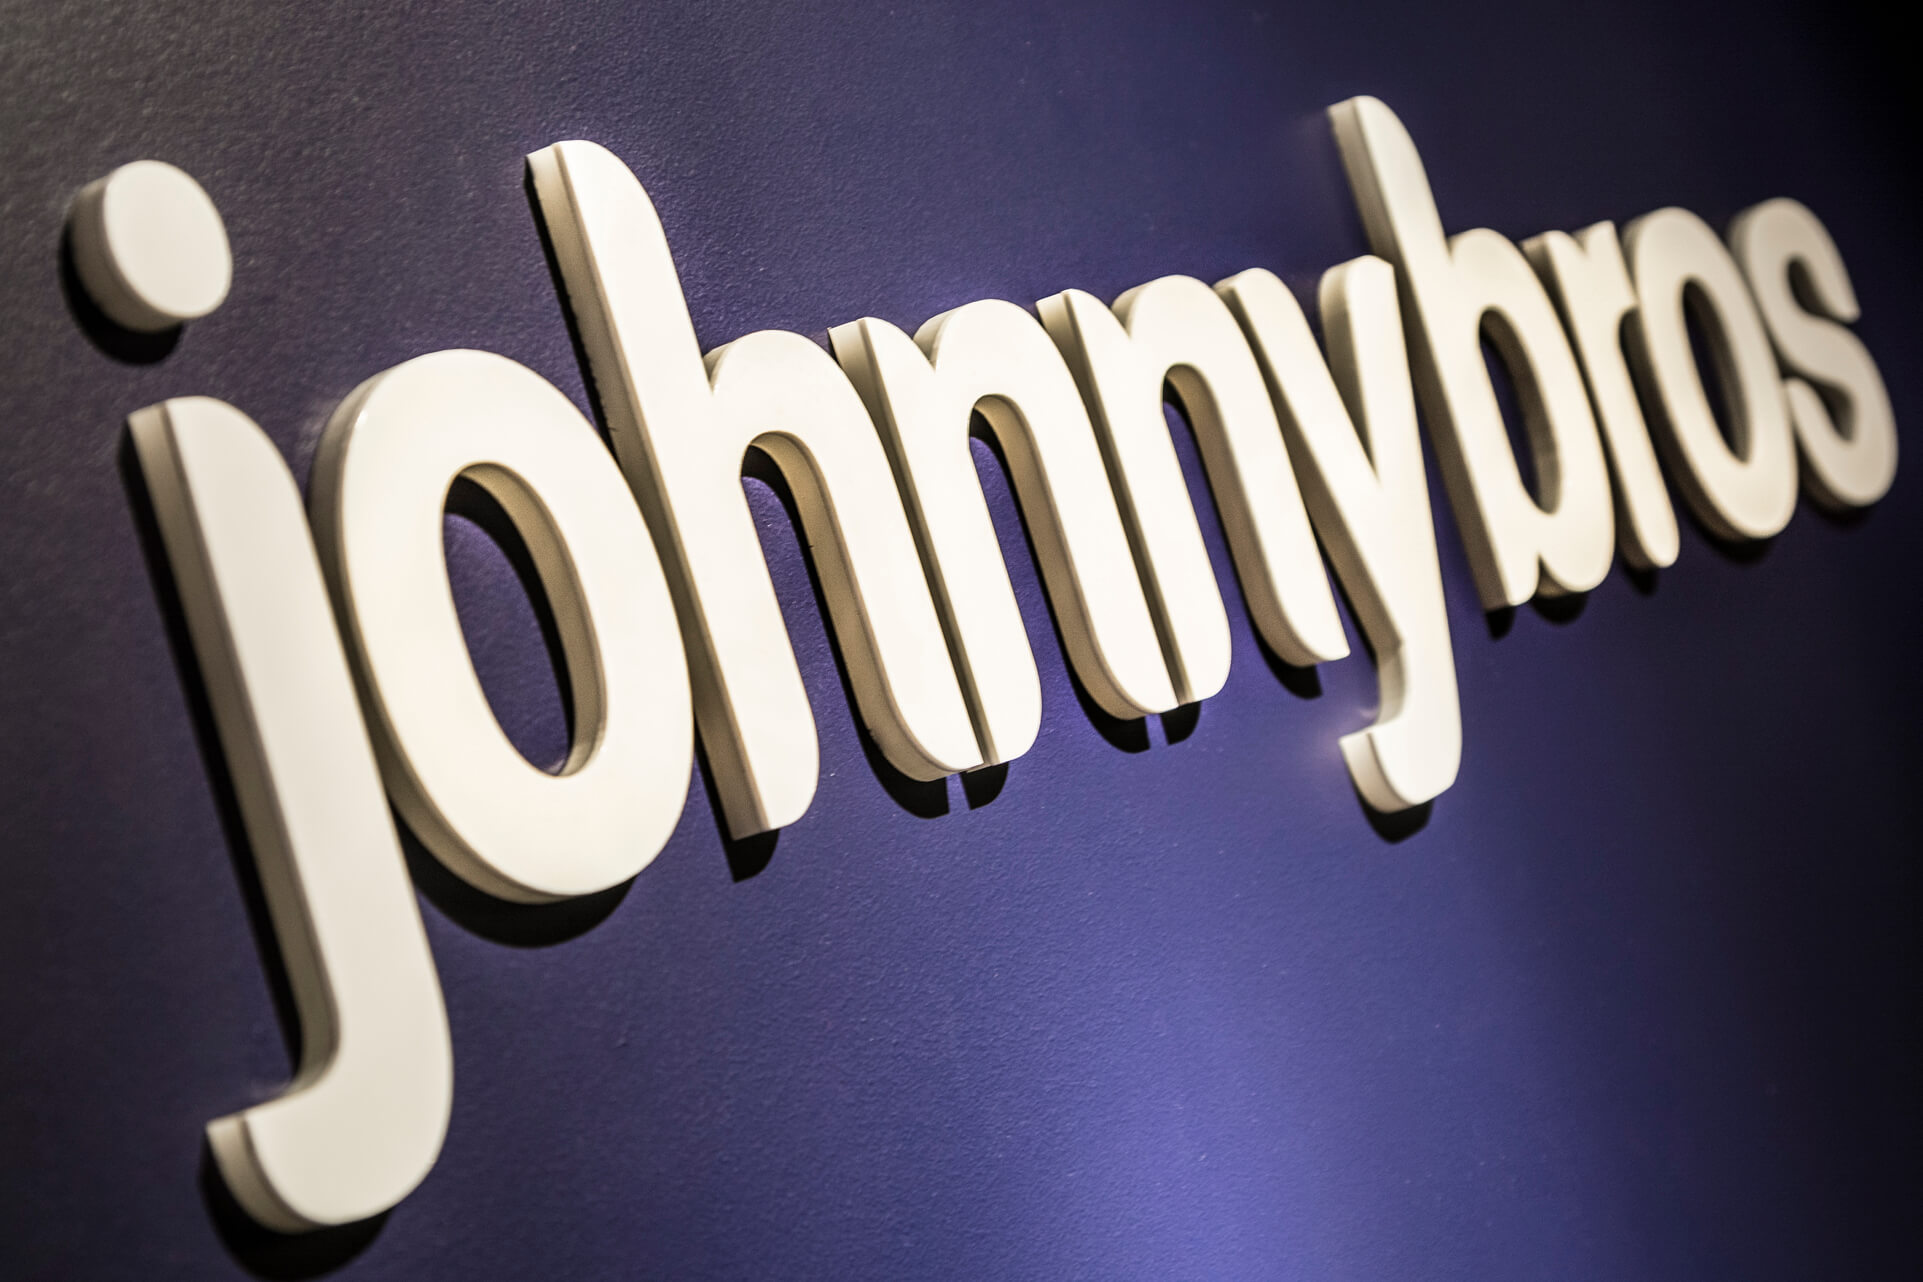 Johnnybros - Johnybros - lettere 3D in acrilico ritagliate con il laser